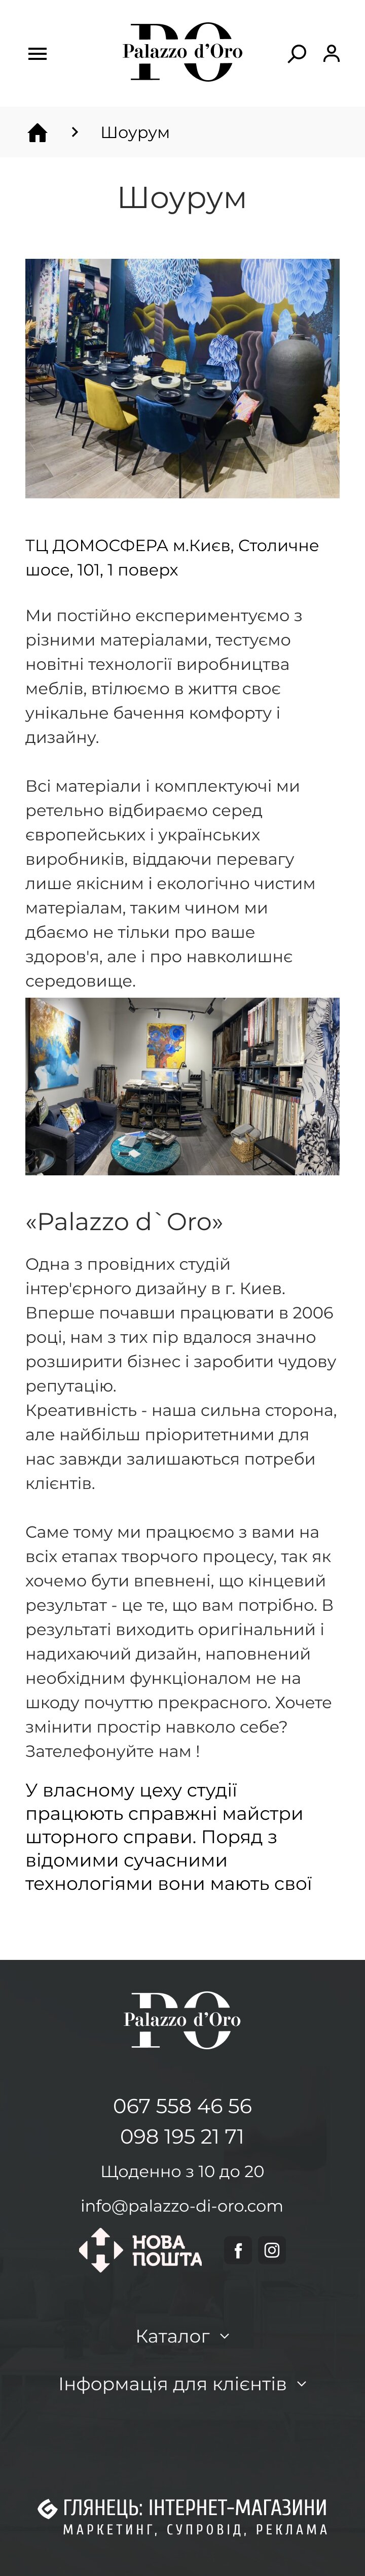 ™ Глянець, студія веб-дизайну — Інтернет-магазин Palazzo-di-oro_30